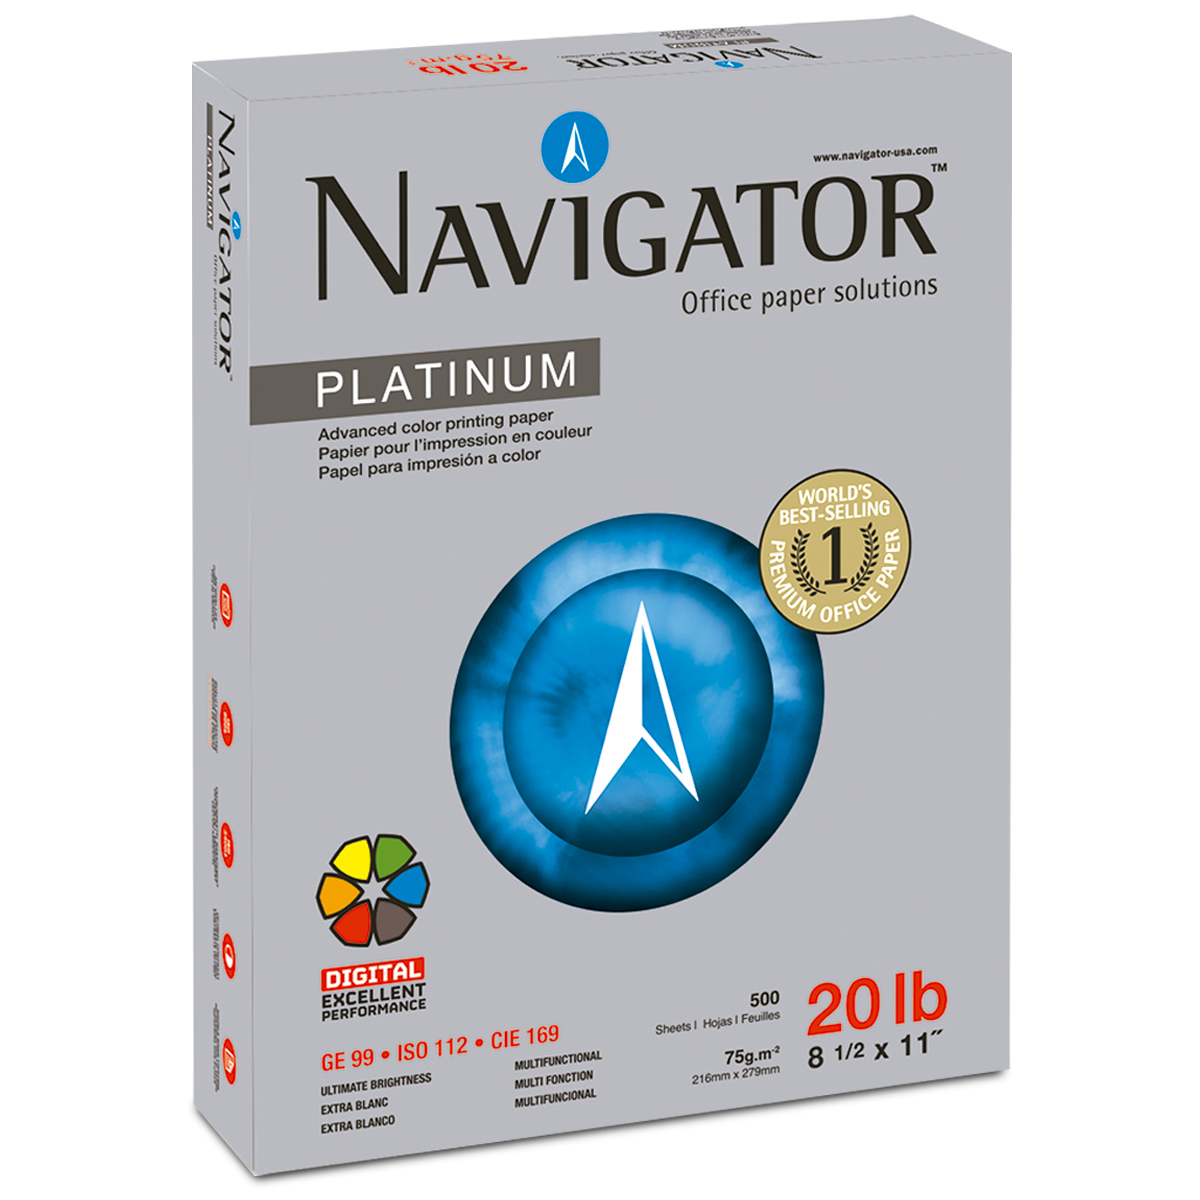 Papel Bond Carta Navigator Platinum / Paquete 500 hojas blancas